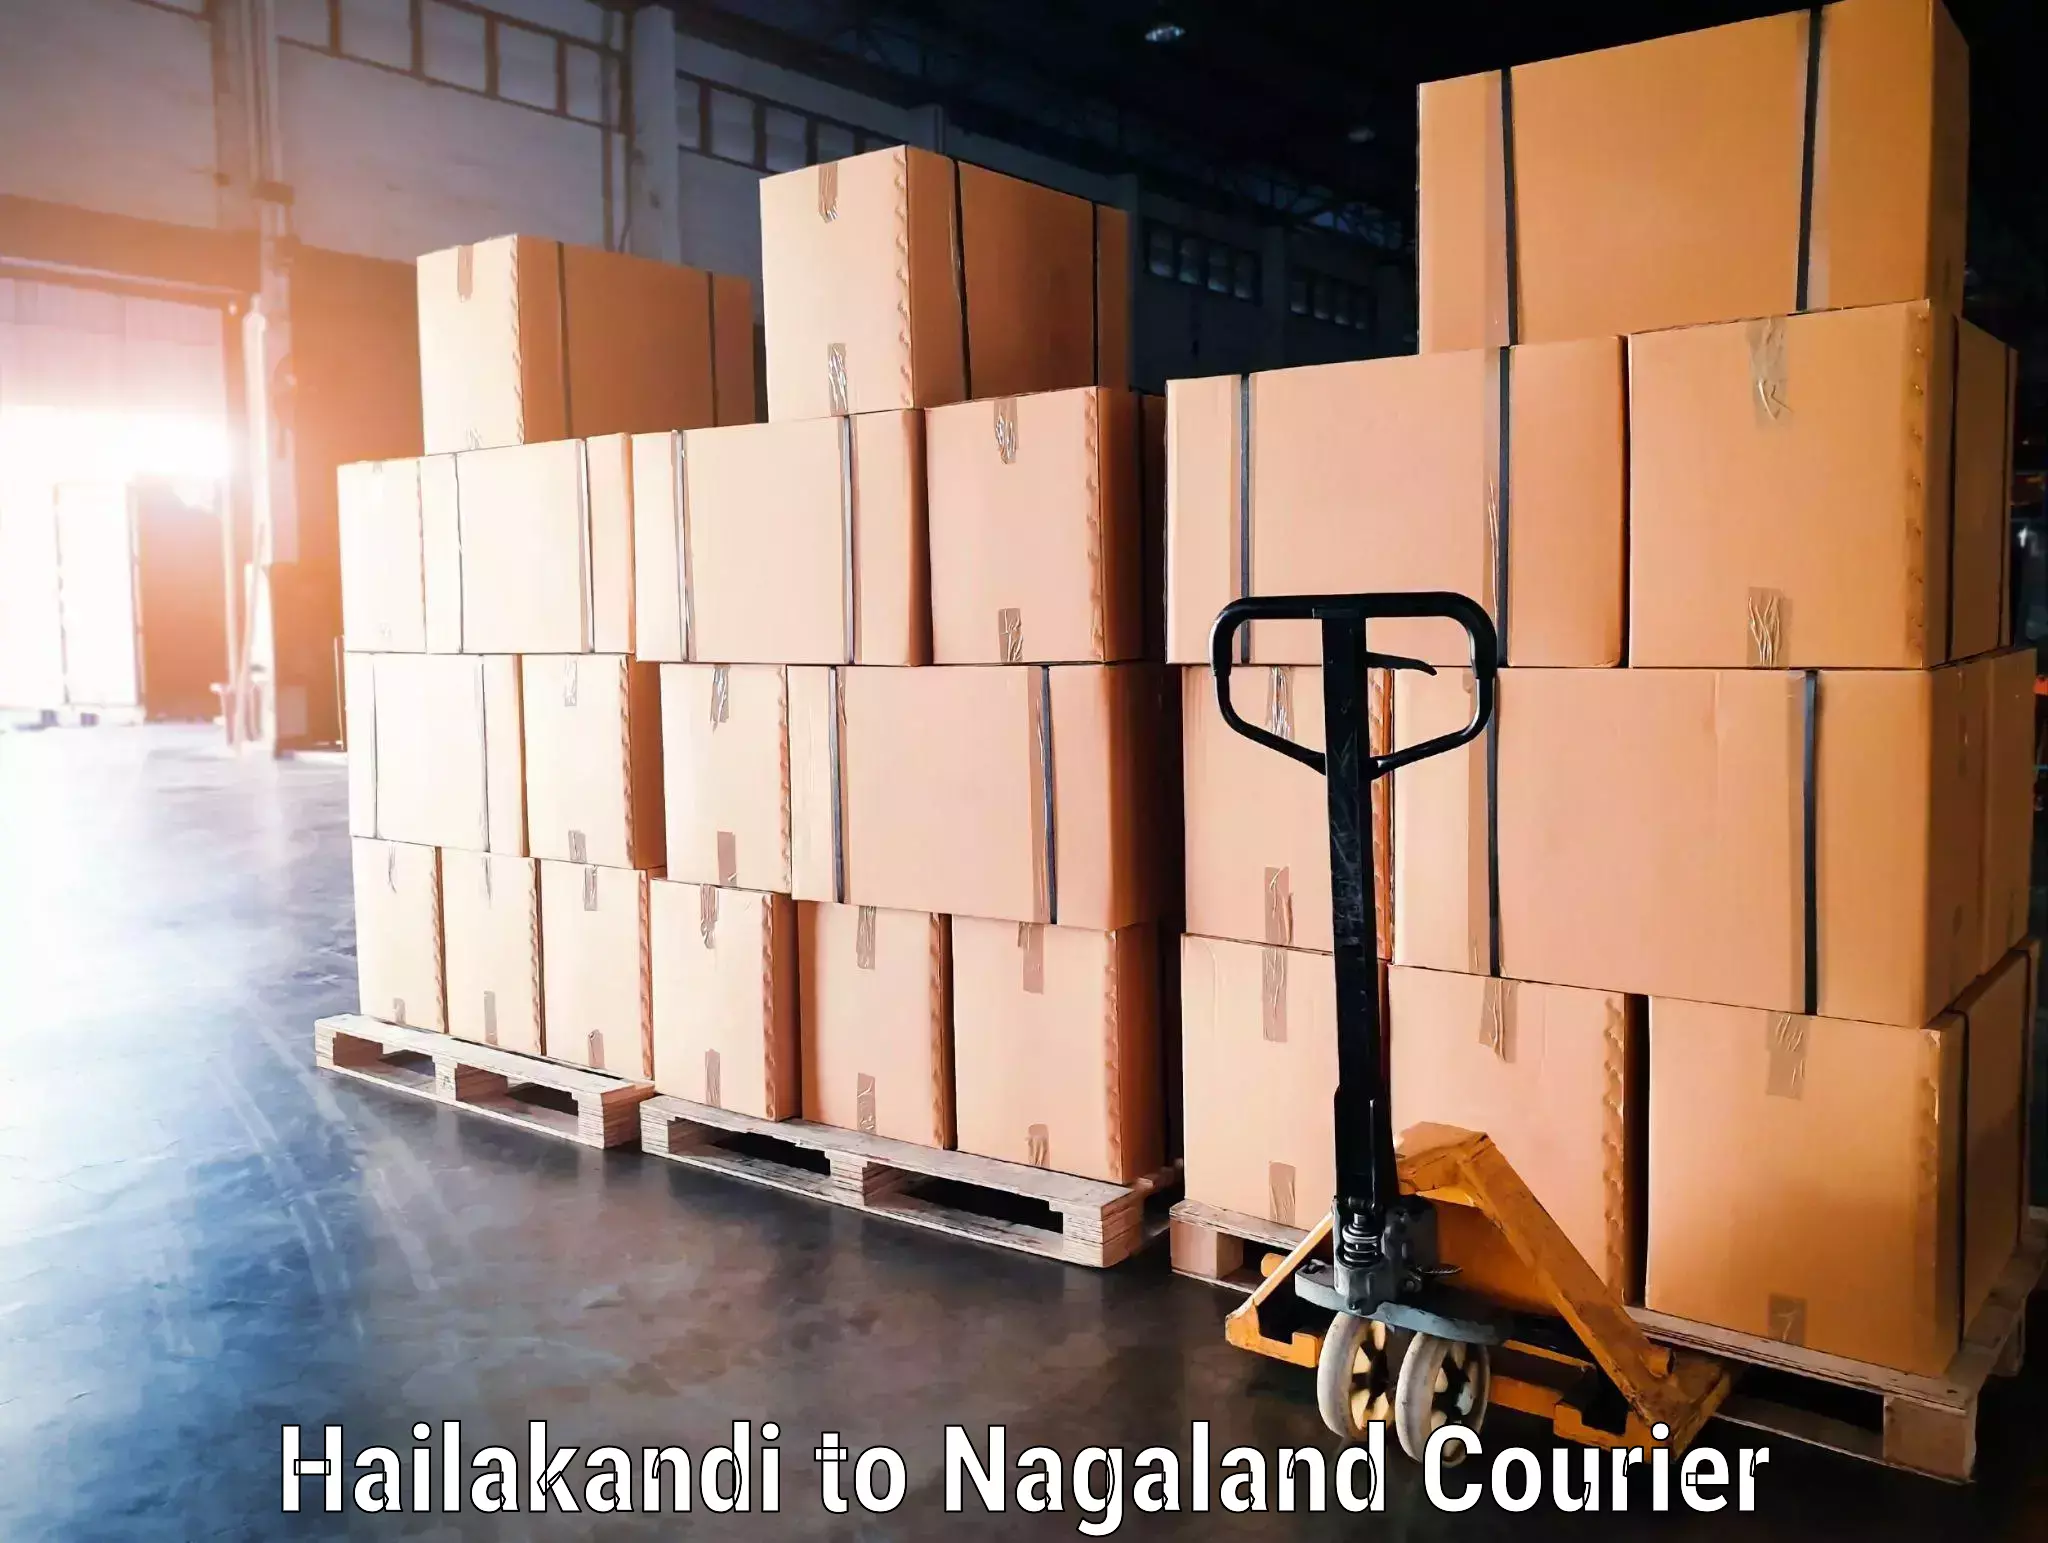 Baggage transport network Hailakandi to Nagaland